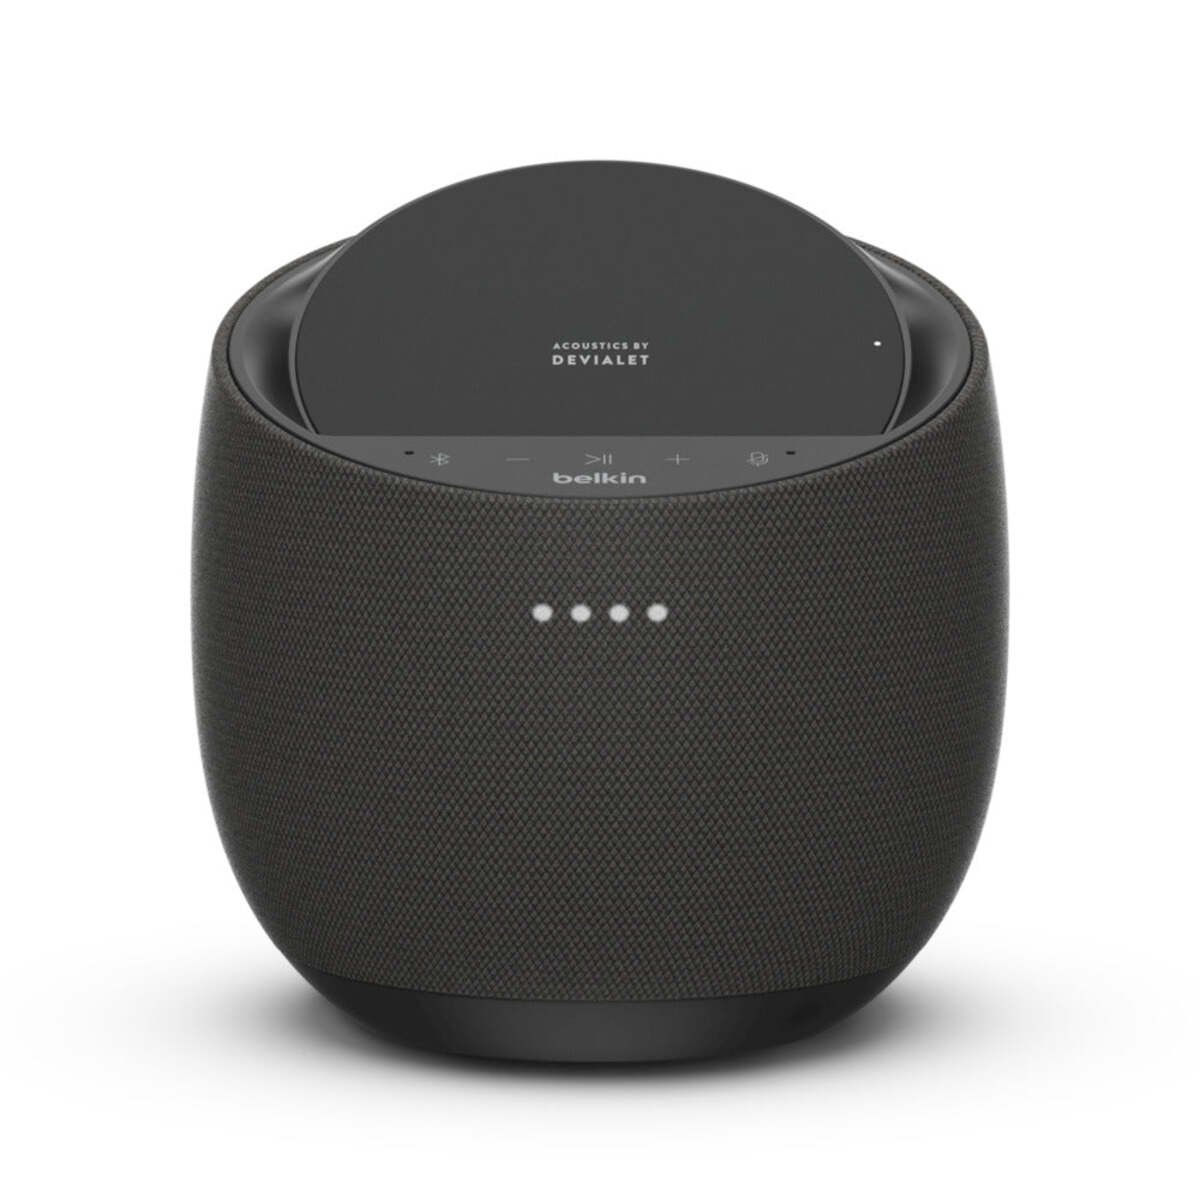 Belkin Soundform Elite Hi-fi Smart Speaker + 10w Wireless Charger - Black